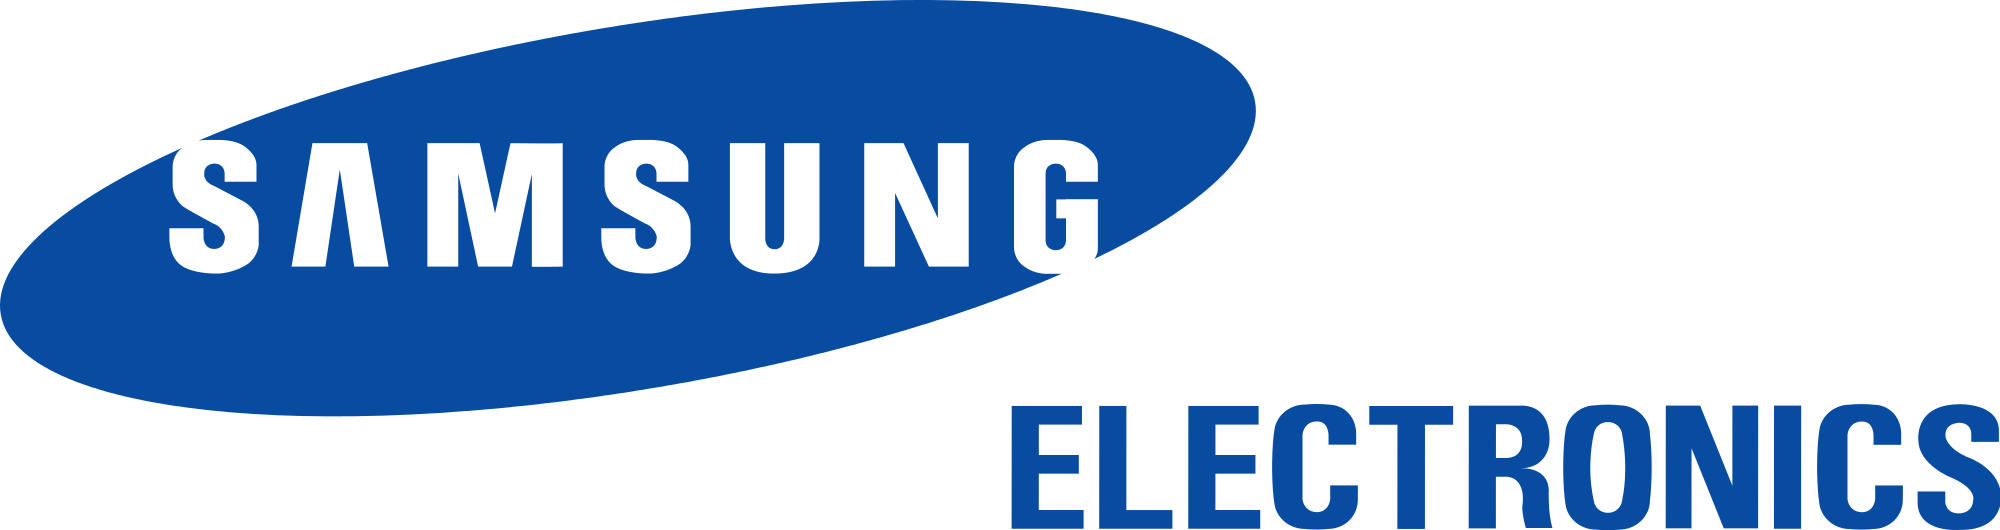 Logo Samsung (Samsung logo): Được thiết kế đơn giản nhưng không kém phần độc đáo, logo Samsung đã trở thành biểu tượng của một thương hiệu lớn mạnh và uy tín trên thế giới. Mỗi khi được xuất hiện, logo này đều mang đến sự tin tưởng và đảm bảo cho người sử dụng về chất lượng của sản phẩm.